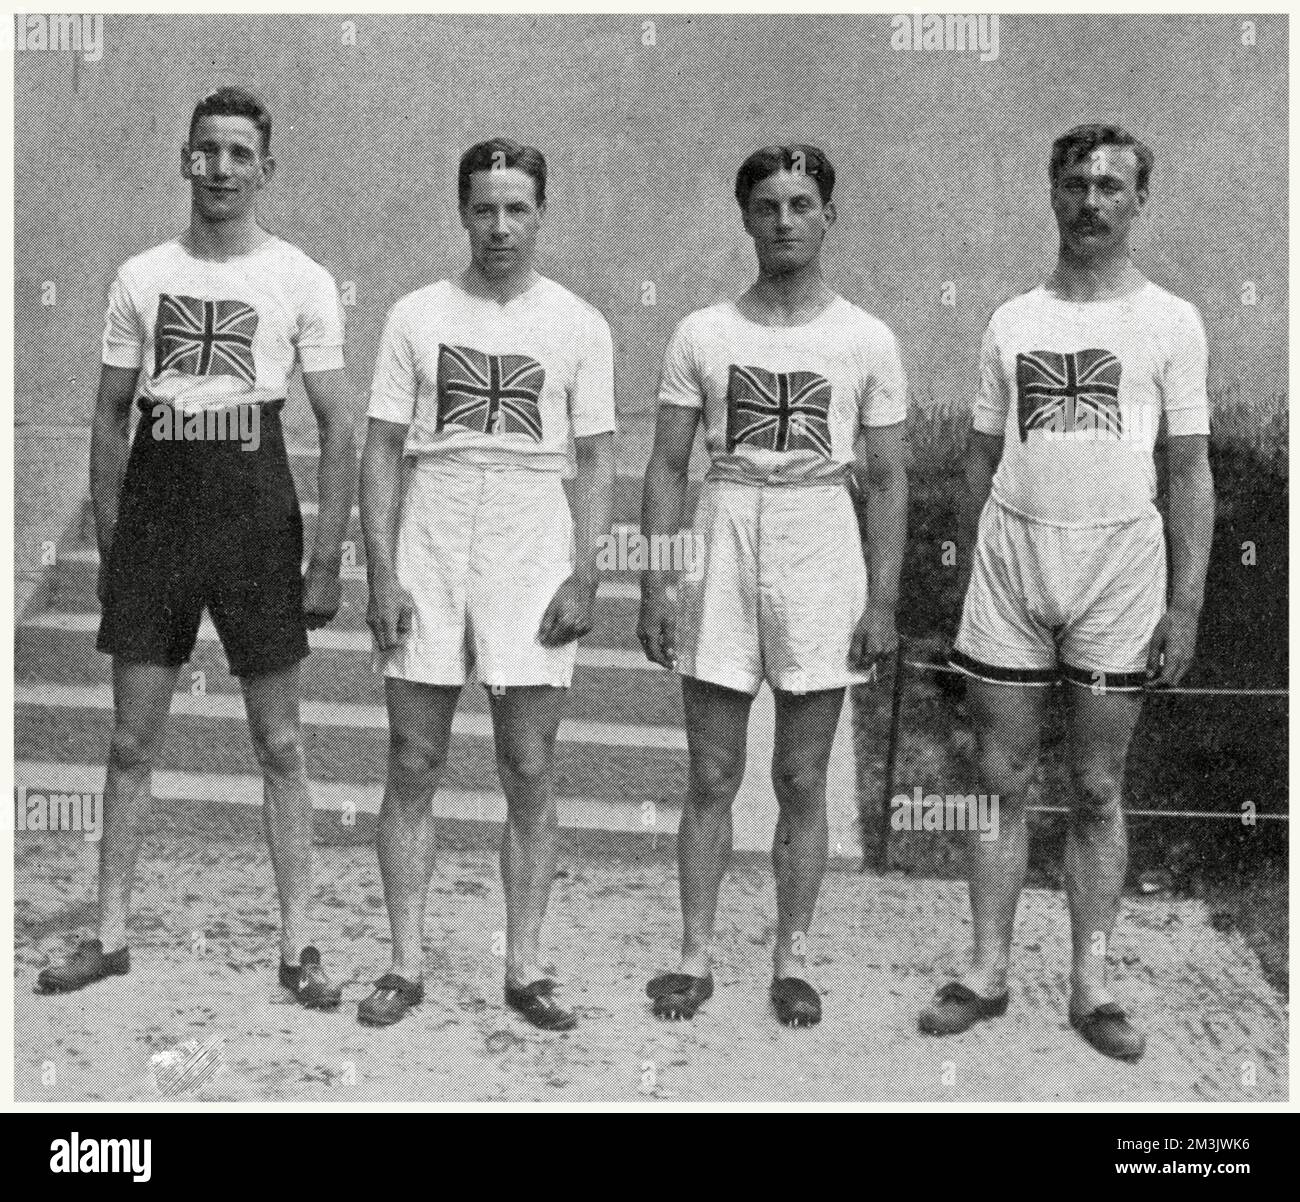 La squadra inglese di staffetta da 4 x 100 metri che ha vinto le medaglie d'oro alle Olimpiadi di Stoccolma del 1912. Da sinistra a destra: D. Jacobs, H. M. Macintosh, W. R. Applegarth e V. D'Arcy. Nota gli shorts con vita alta e le T-shirt abbellite da un Union Jack. Foto Stock